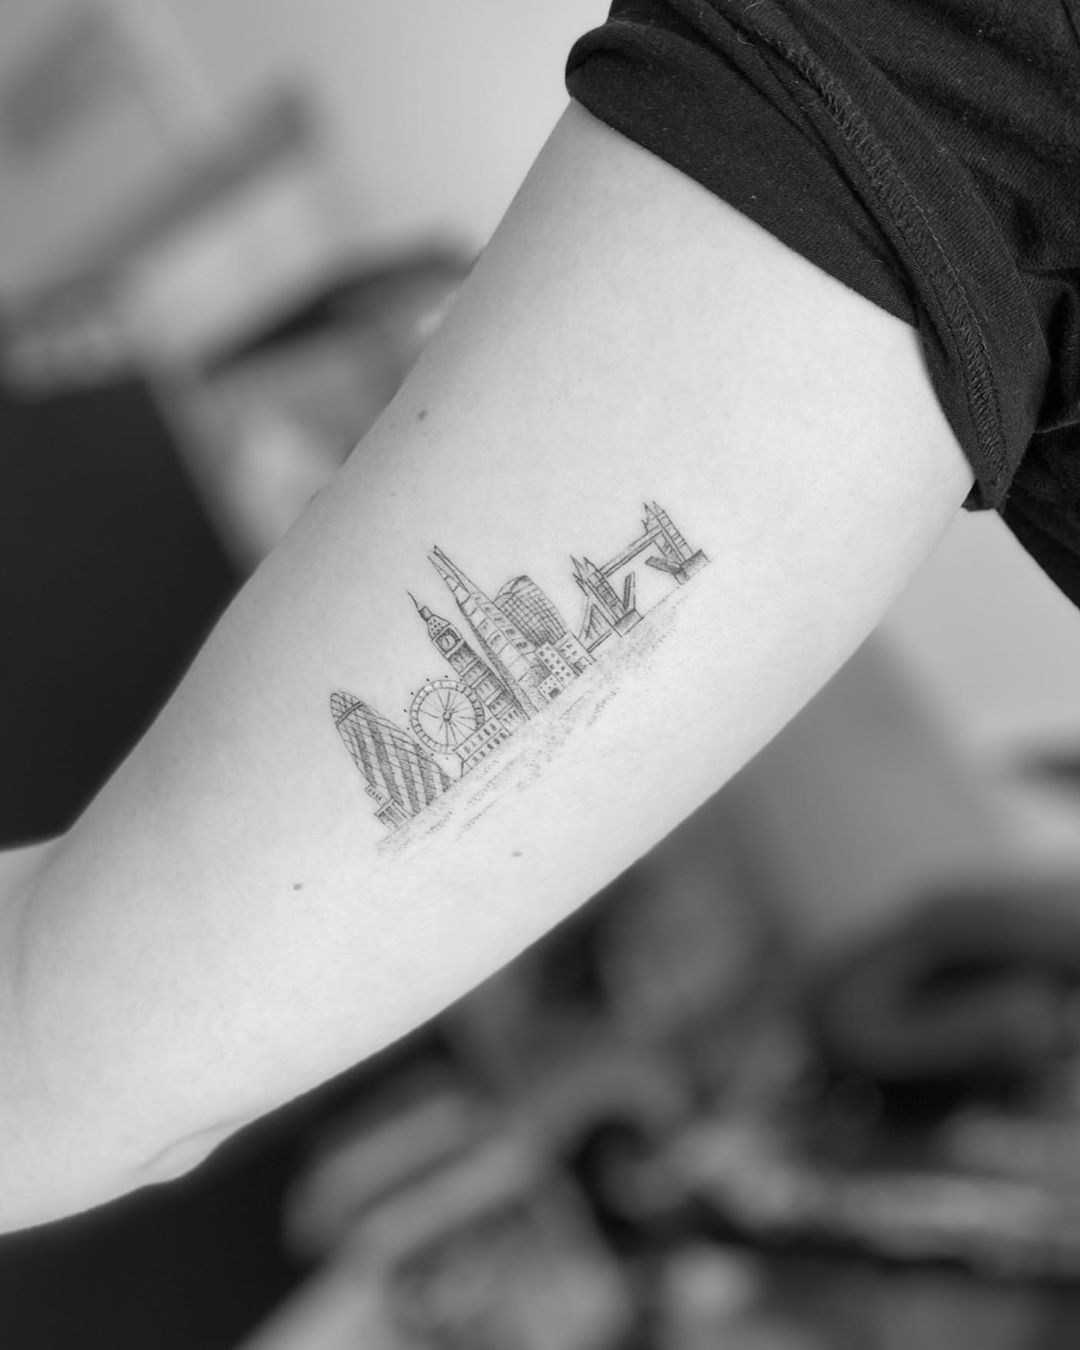 London Skyline tattoo by Oscar Jesus